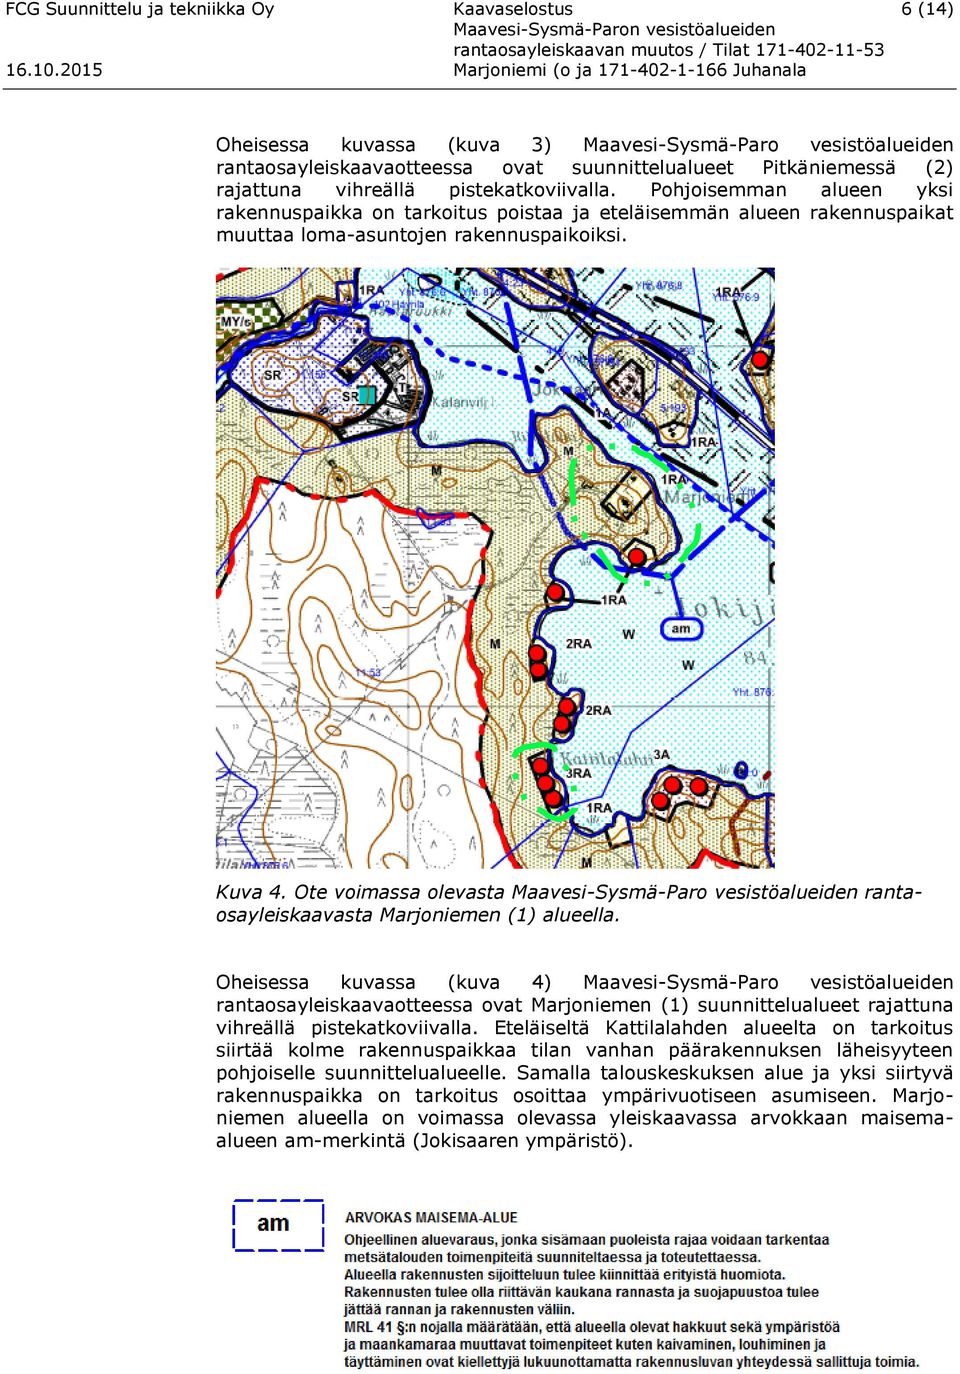 Ote voimassa olevasta Maavesi-Sysmä-Paro vesistöalueiden rantaosayleiskaavasta Marjoniemen (1) alueella.